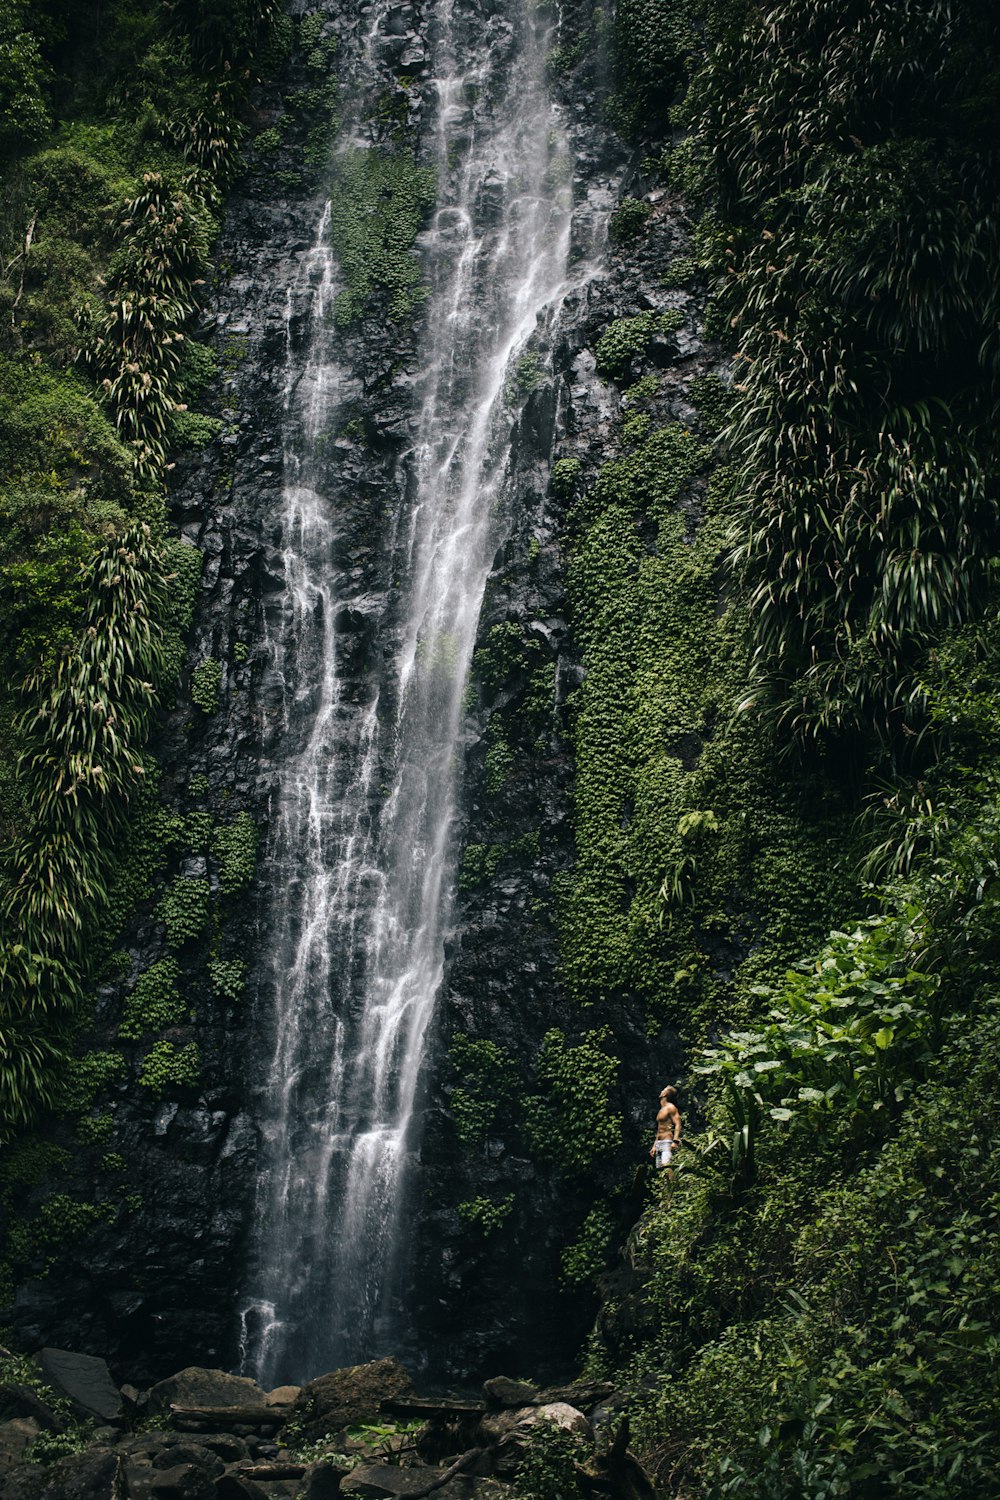 waterfall near green plants